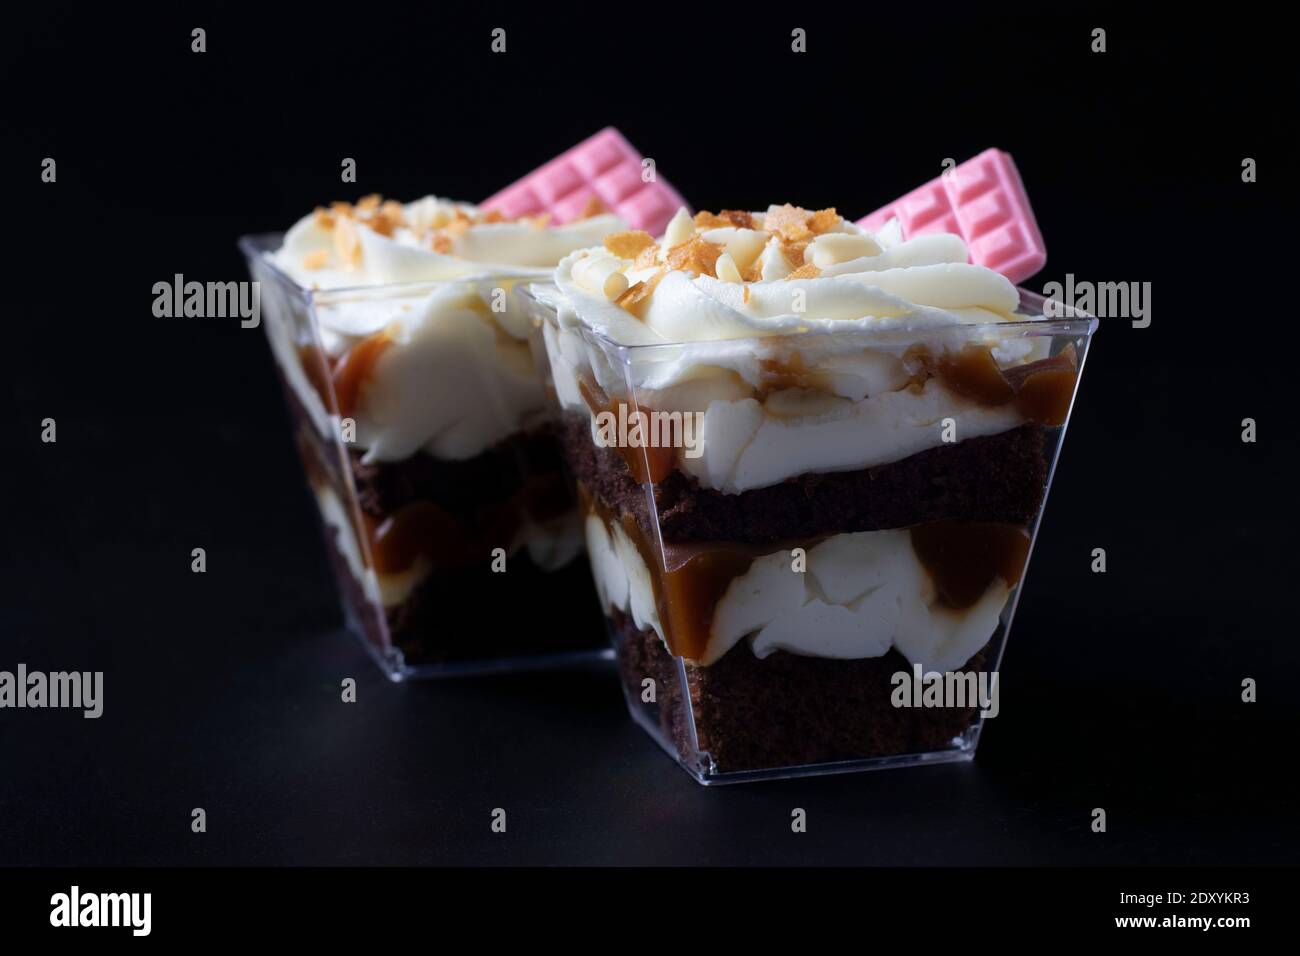 Kleinigkeiten aus Schokoladenkeks mit Karamell-Erdnussfüllung auf schwarzem Hintergrund. Dessert ist mit cremiger Käsecreme und rosa Schokolade dekoriert Stockfoto